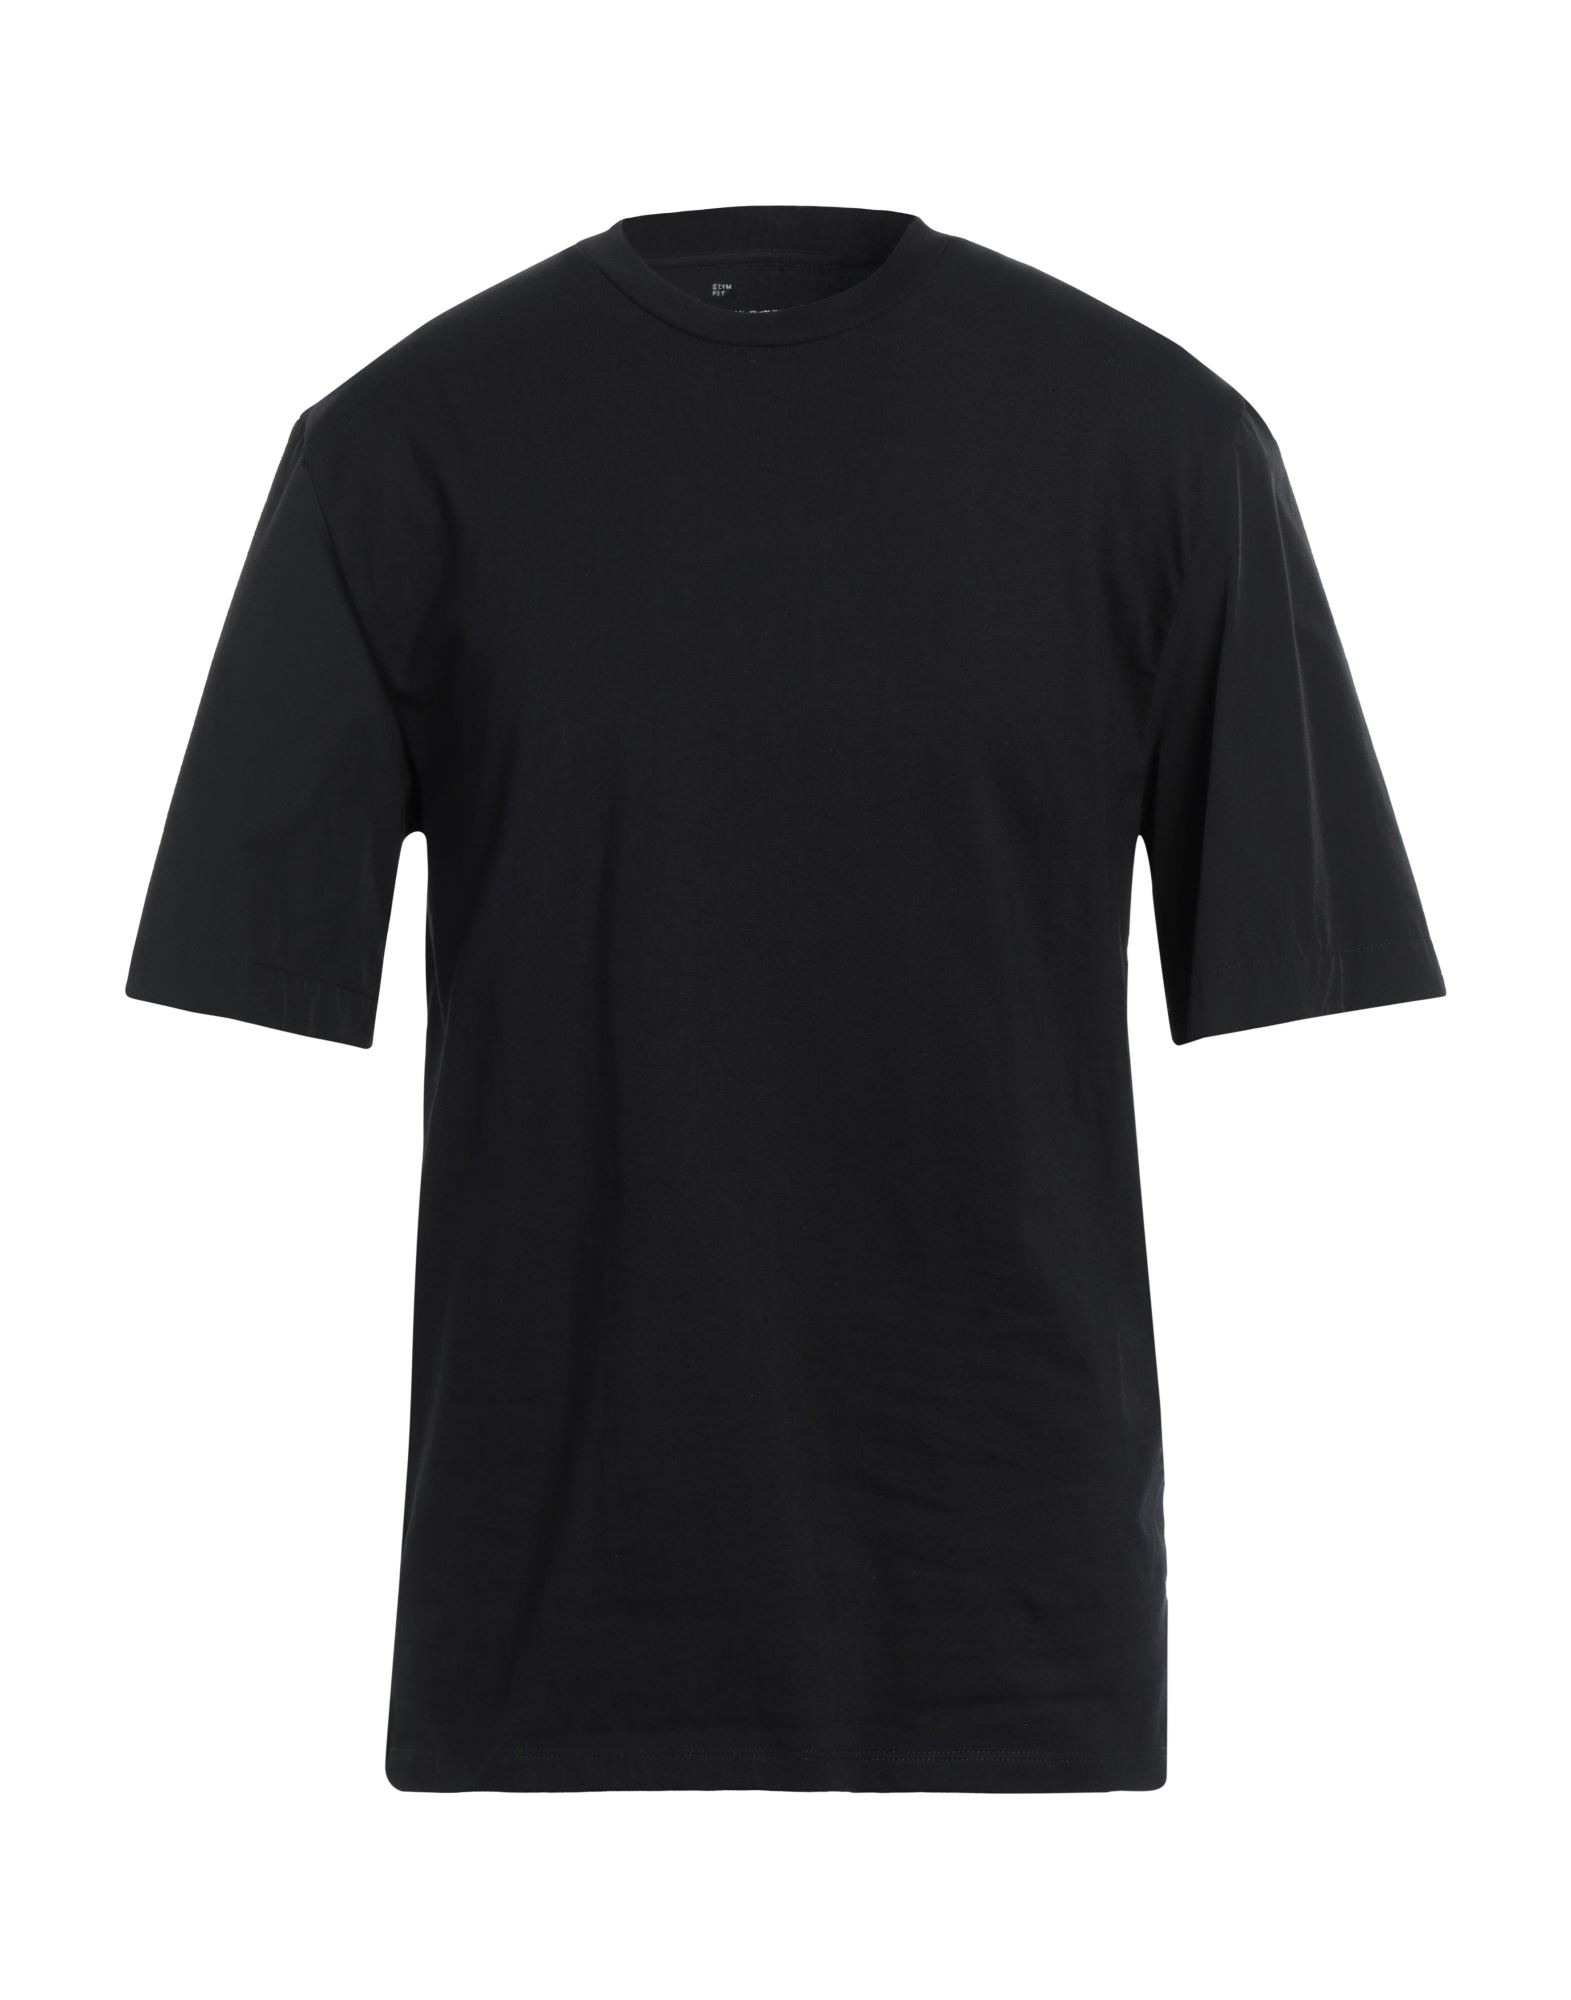 ニール・キャター メンズ Tシャツ トップス Basic T-shirt - メンズ